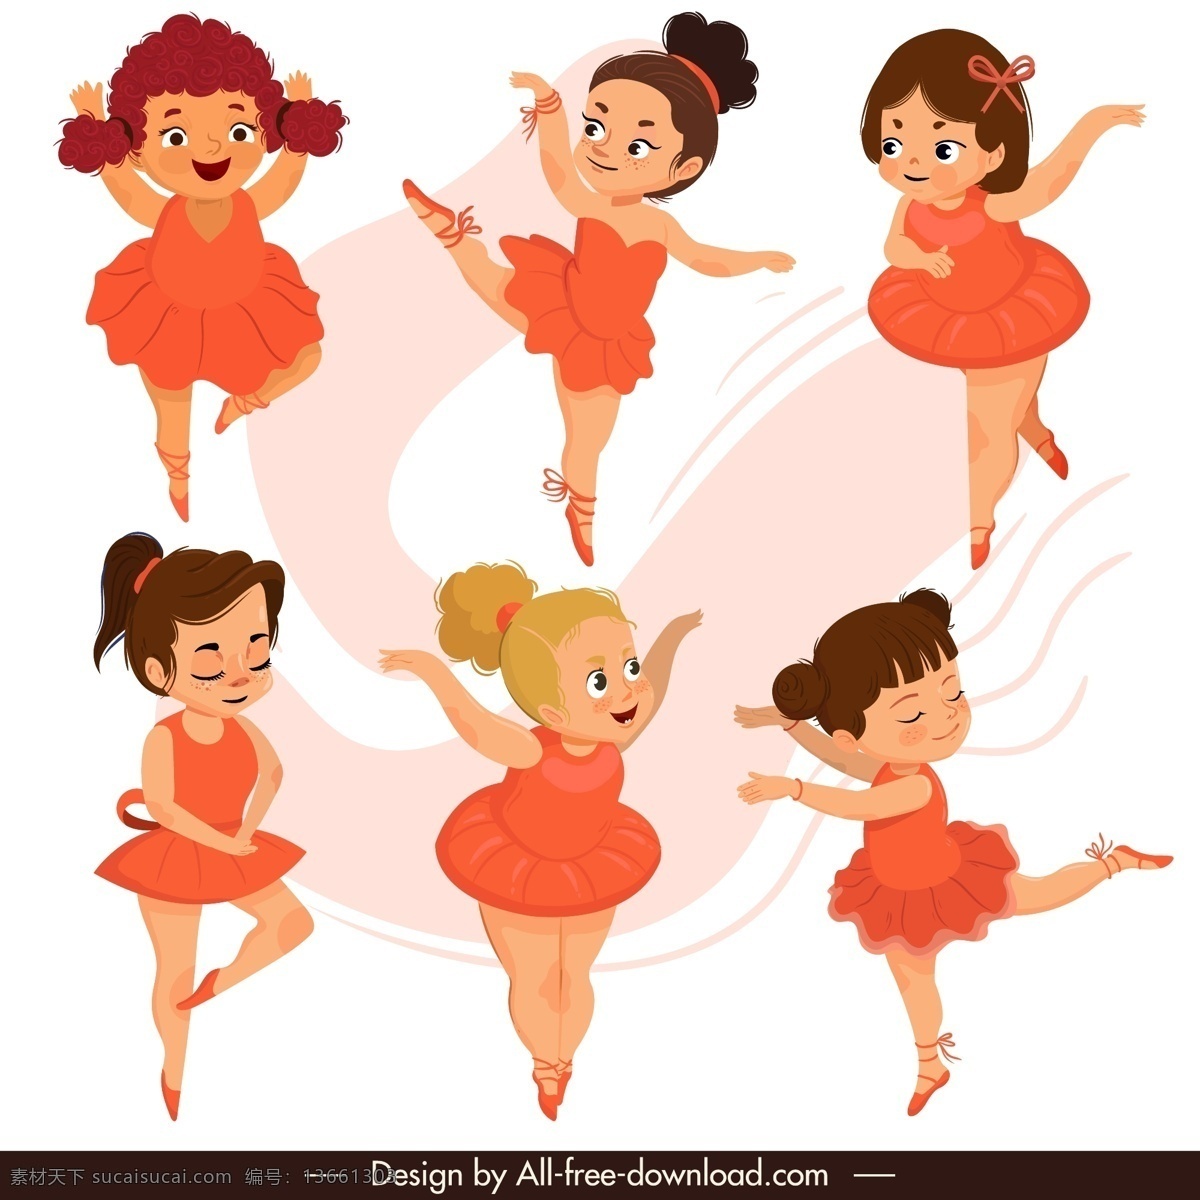 6款卡通 芭蕾舞女孩 矢量素材 卡通 红裙子 芭蕾舞 女孩 舞蹈 矢量图 ai格式